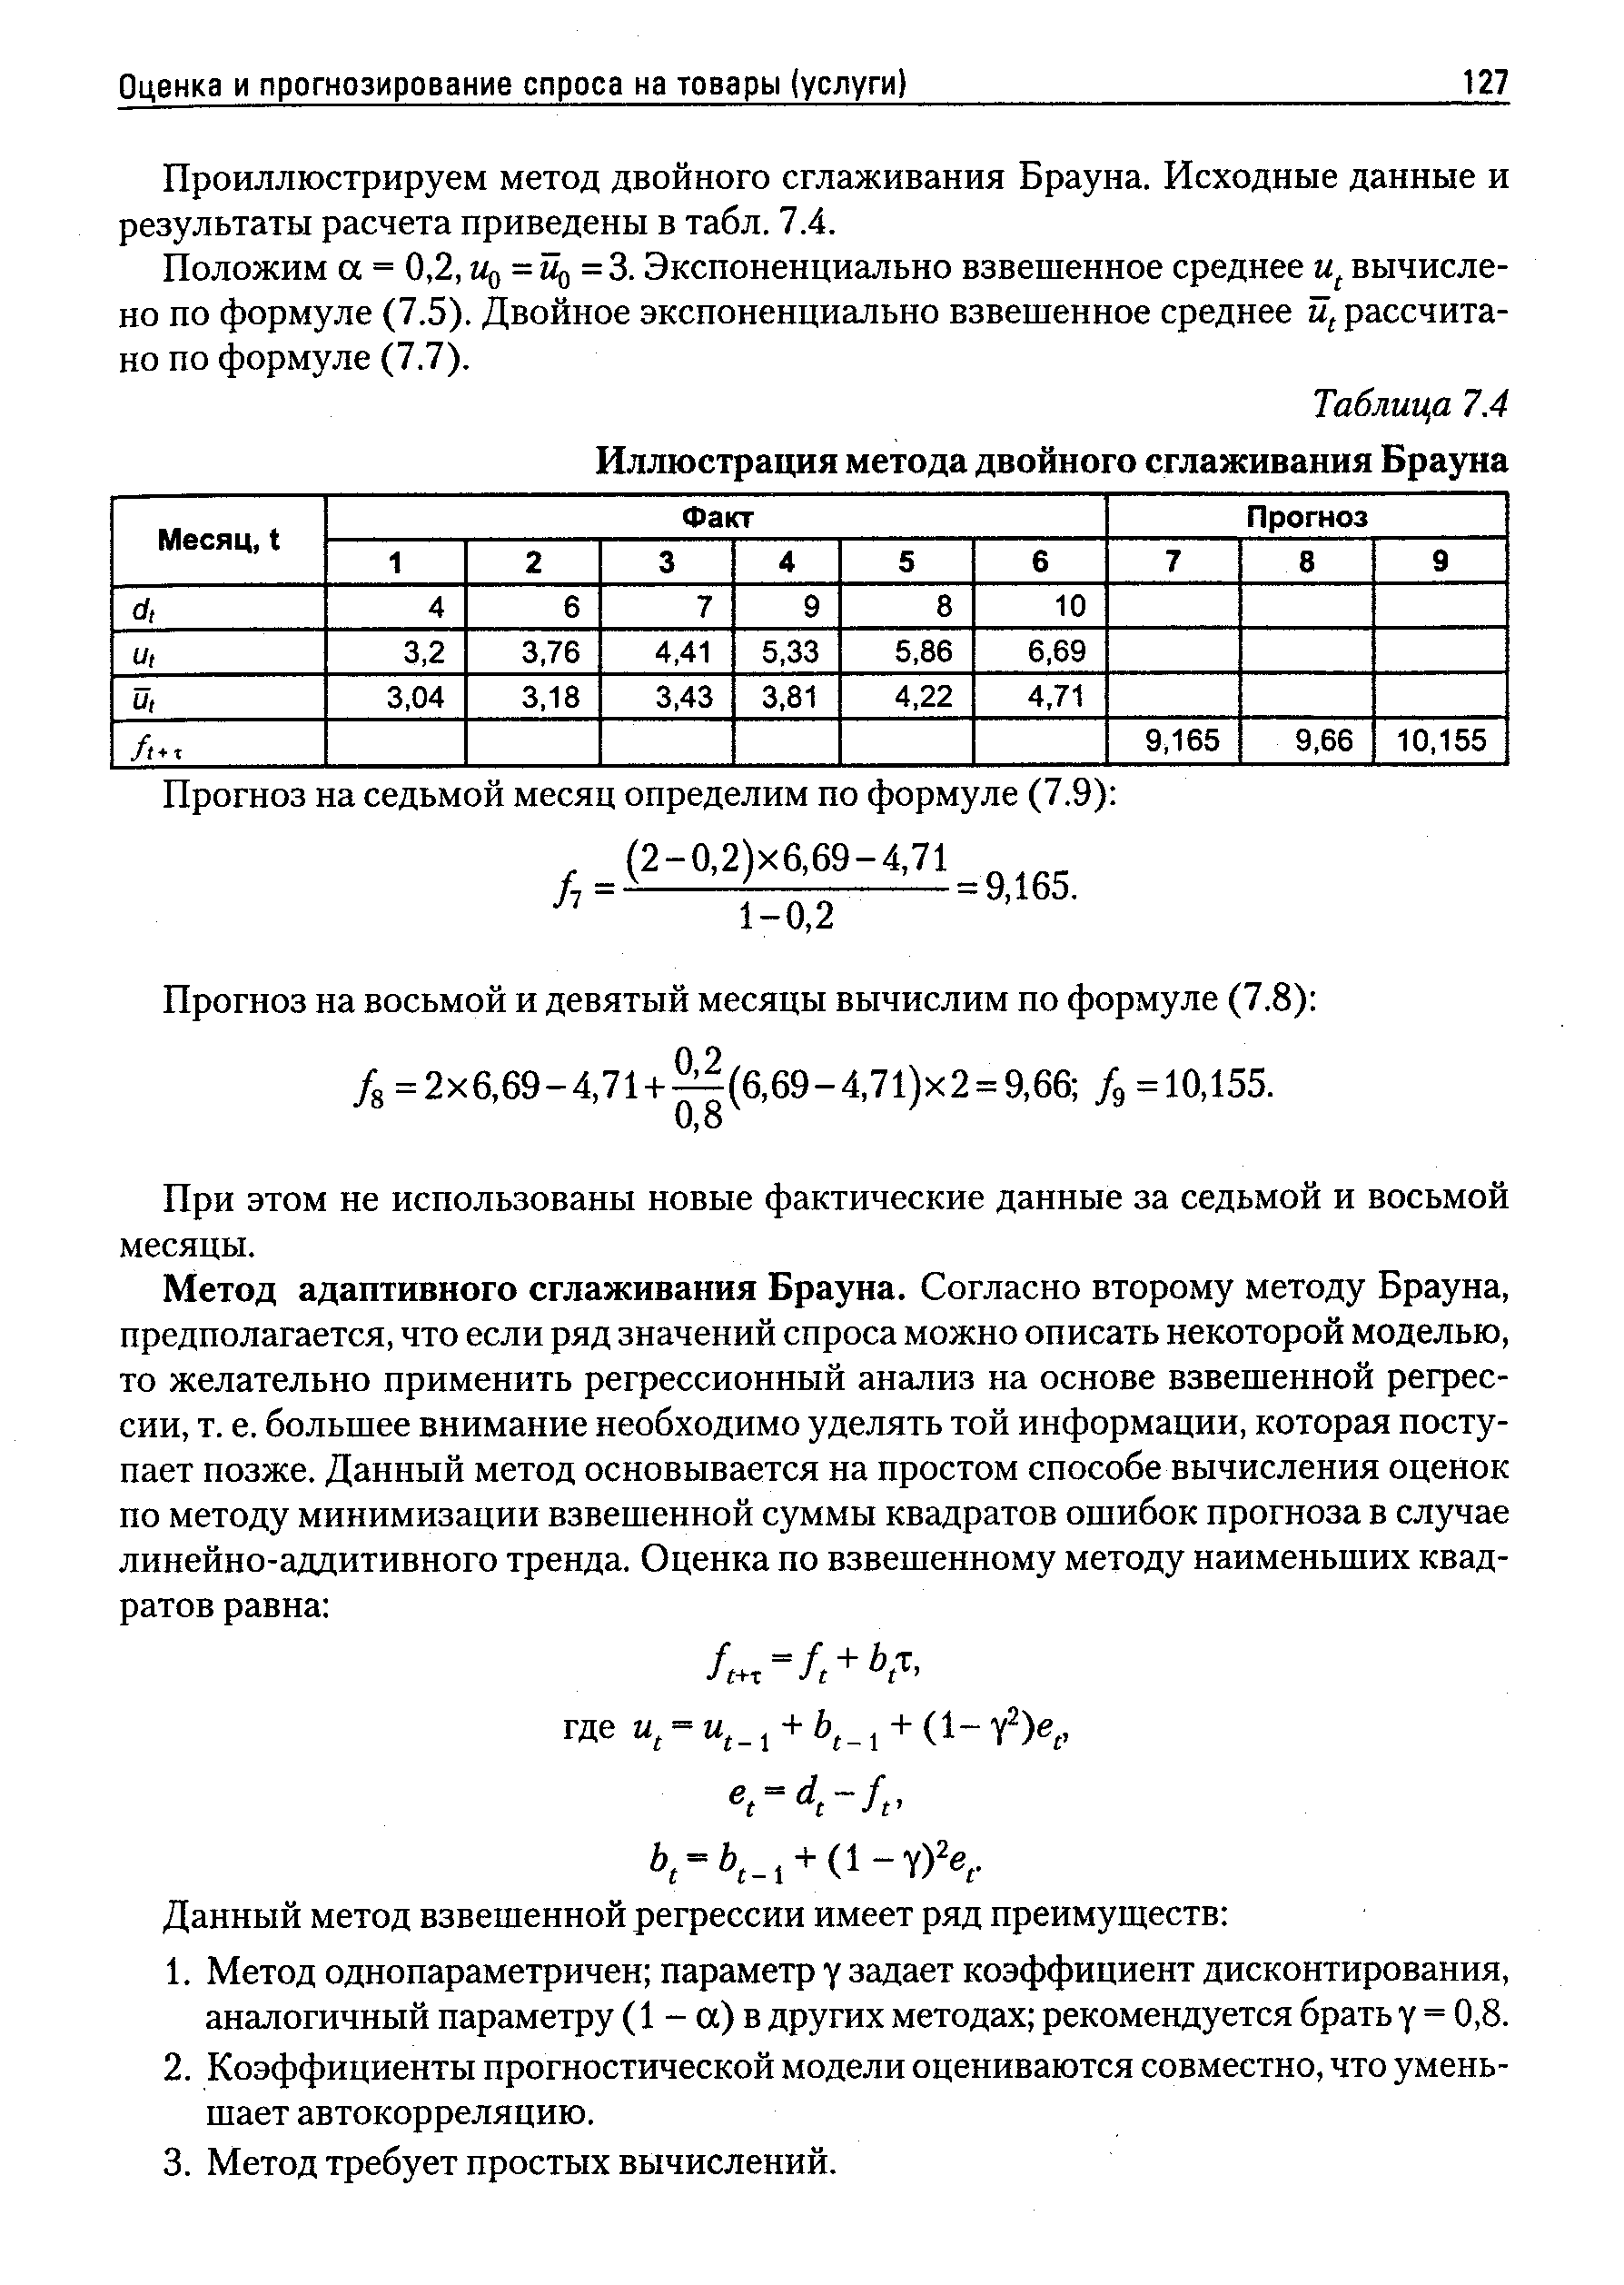 Таблица 7.4 Иллюстрация метода двойного сглаживания Брауна
